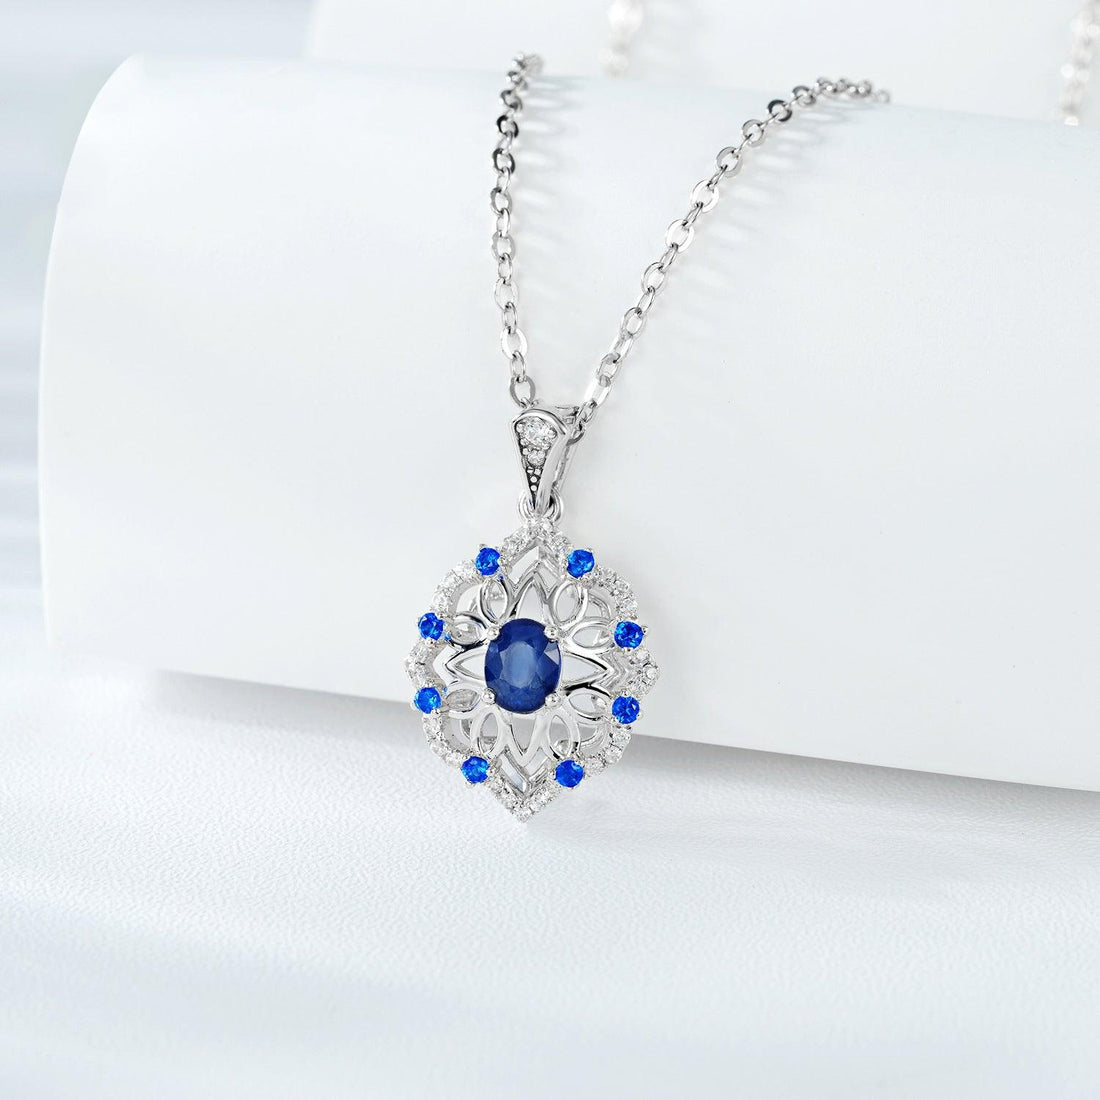 Retro Elegance: Natural Sapphire Pendant in S925 Silver